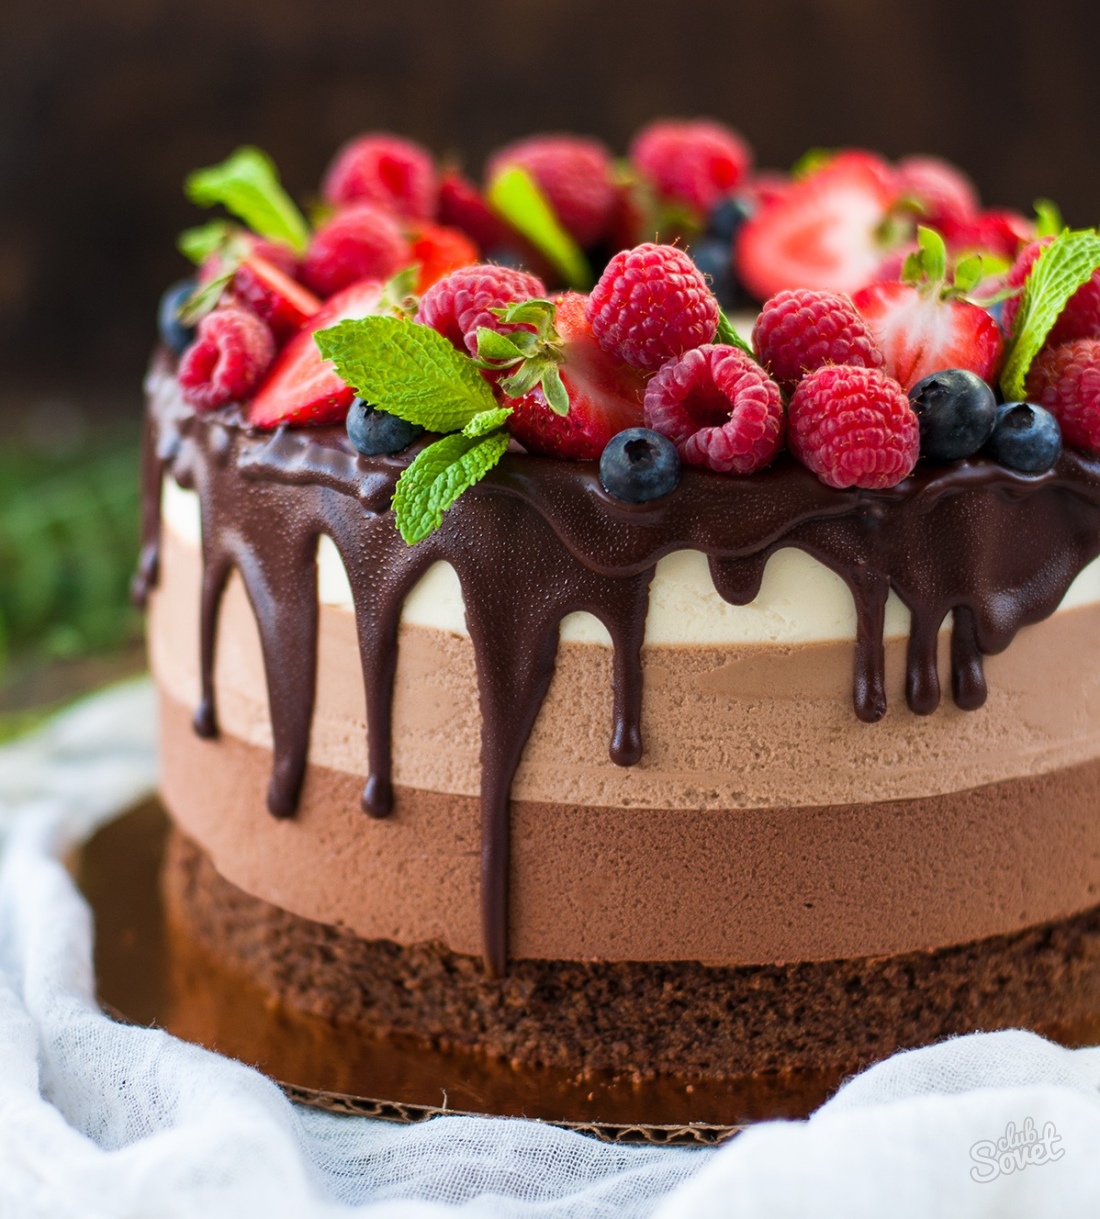 Come fare perdite sulla torta al cioccolato?